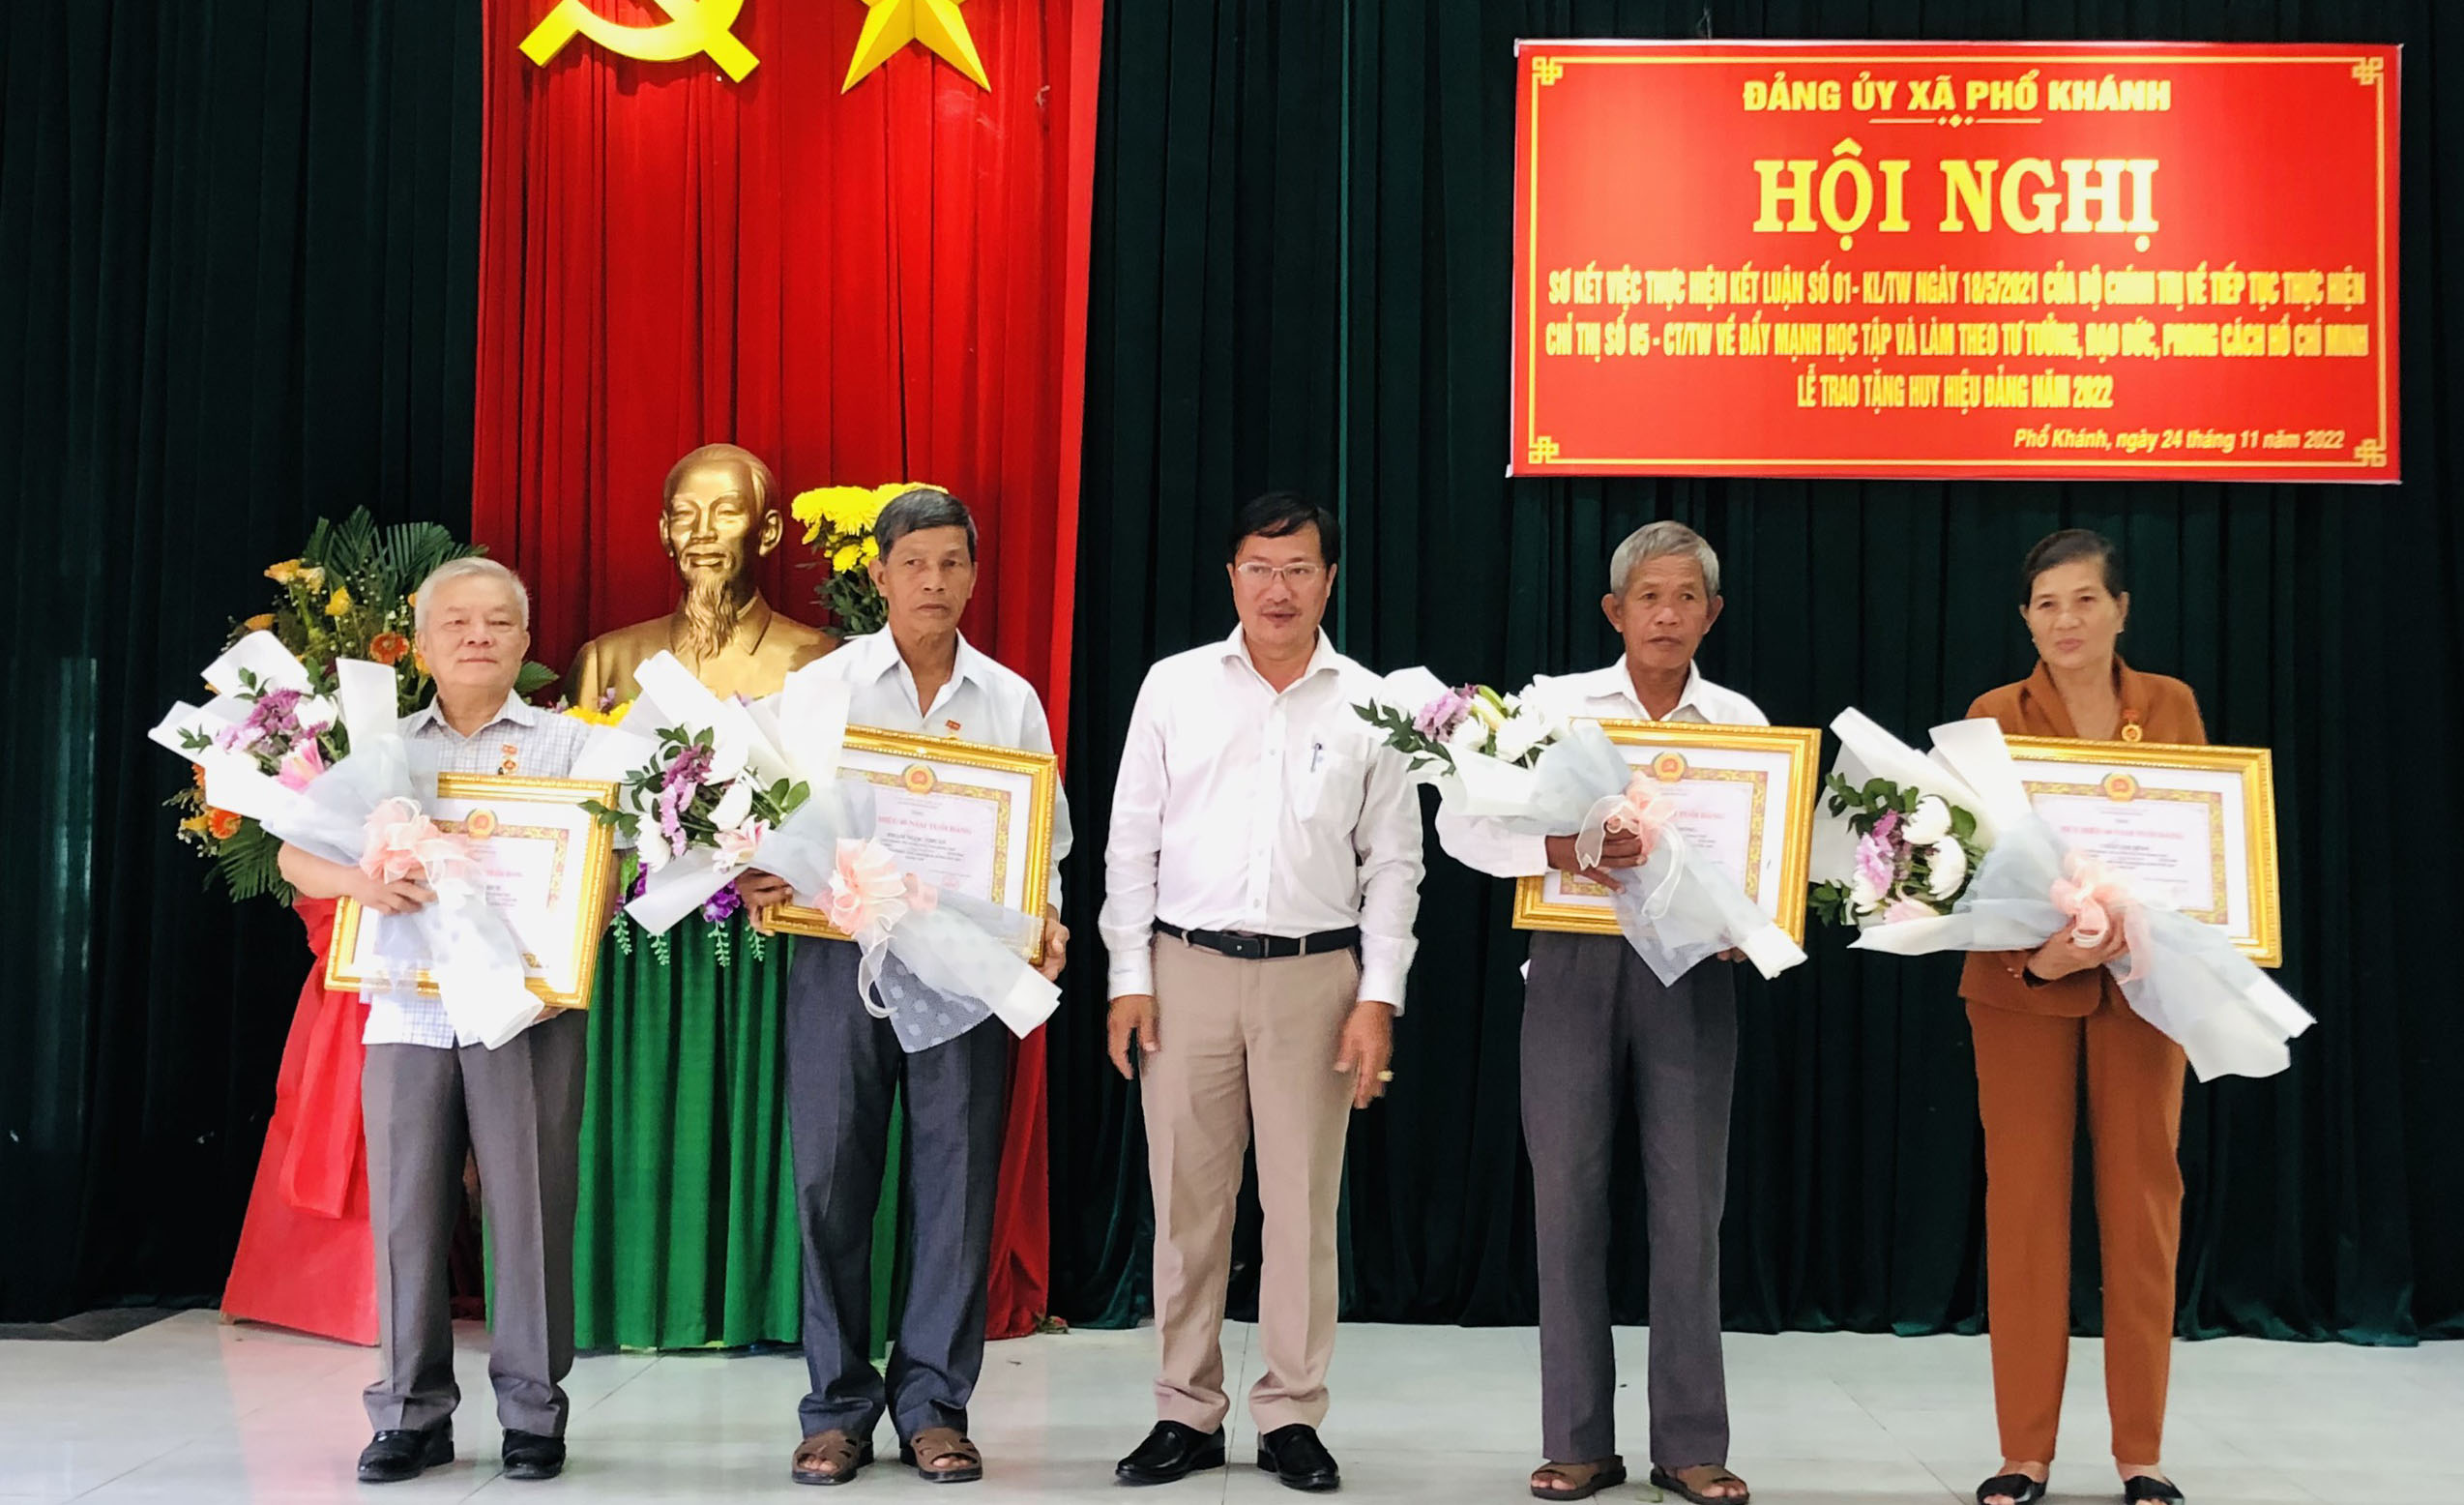 Đảng uỷ xã Phổ Khánh tổ chức Lễ trao tặng huy hiệu Đảng